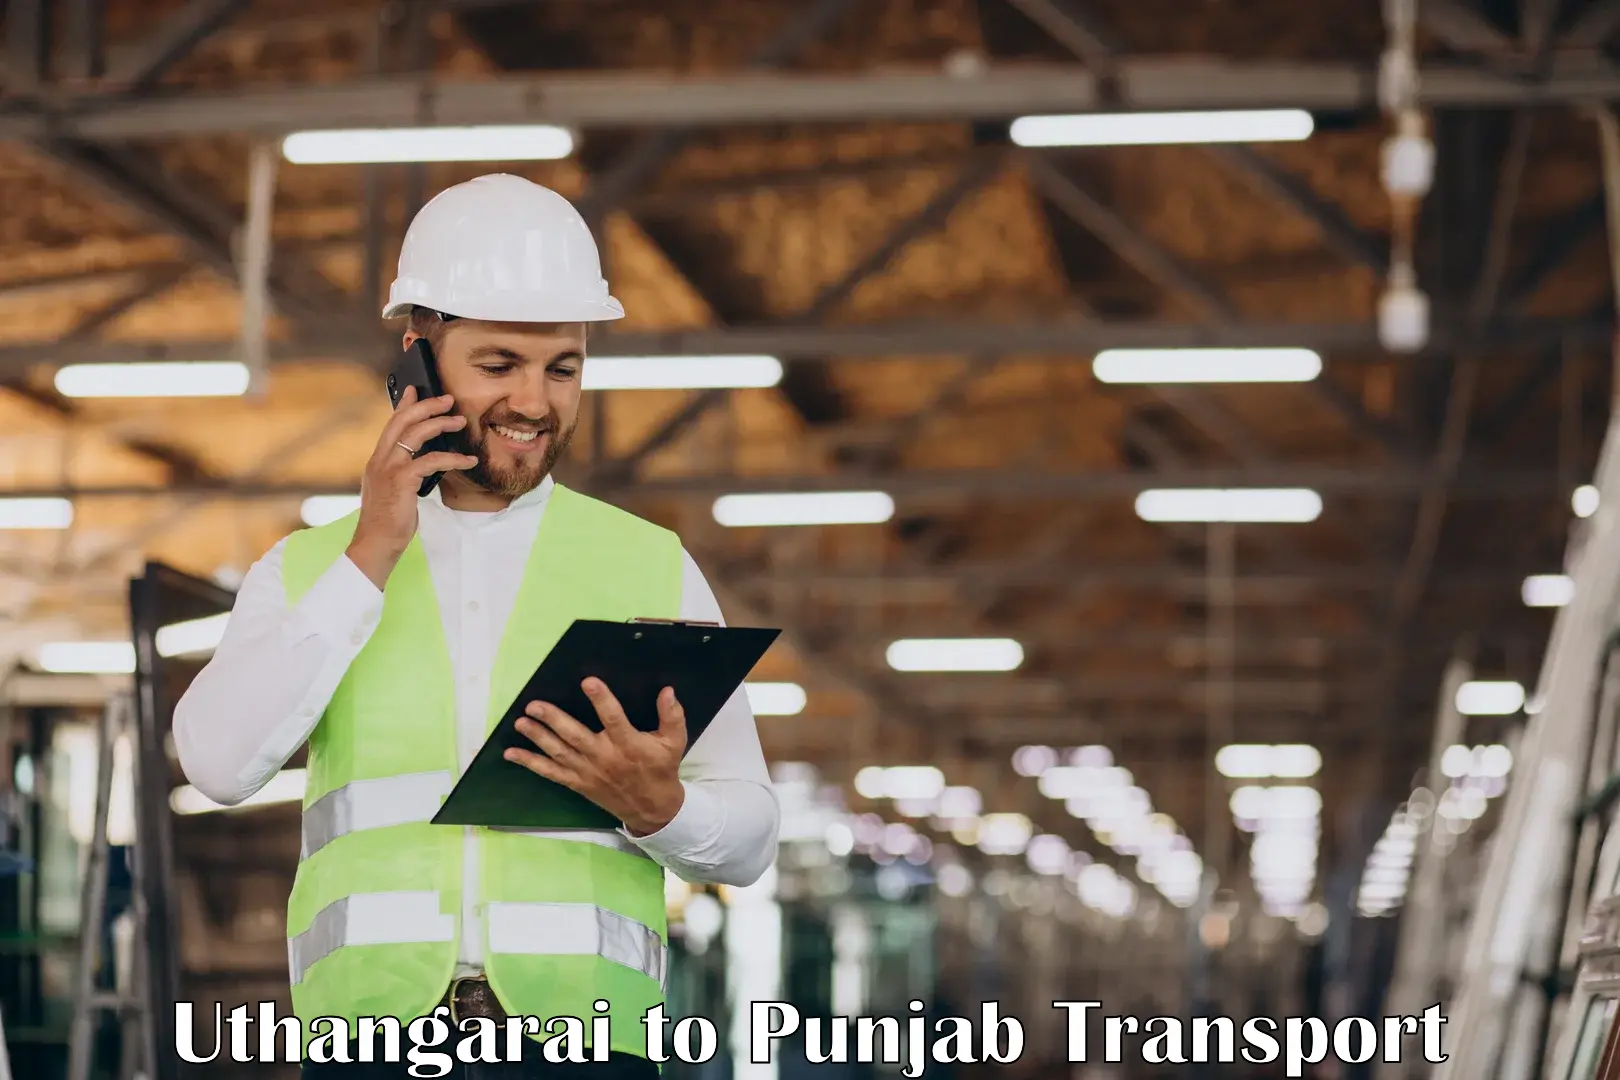 Express transport services Uthangarai to Punjab